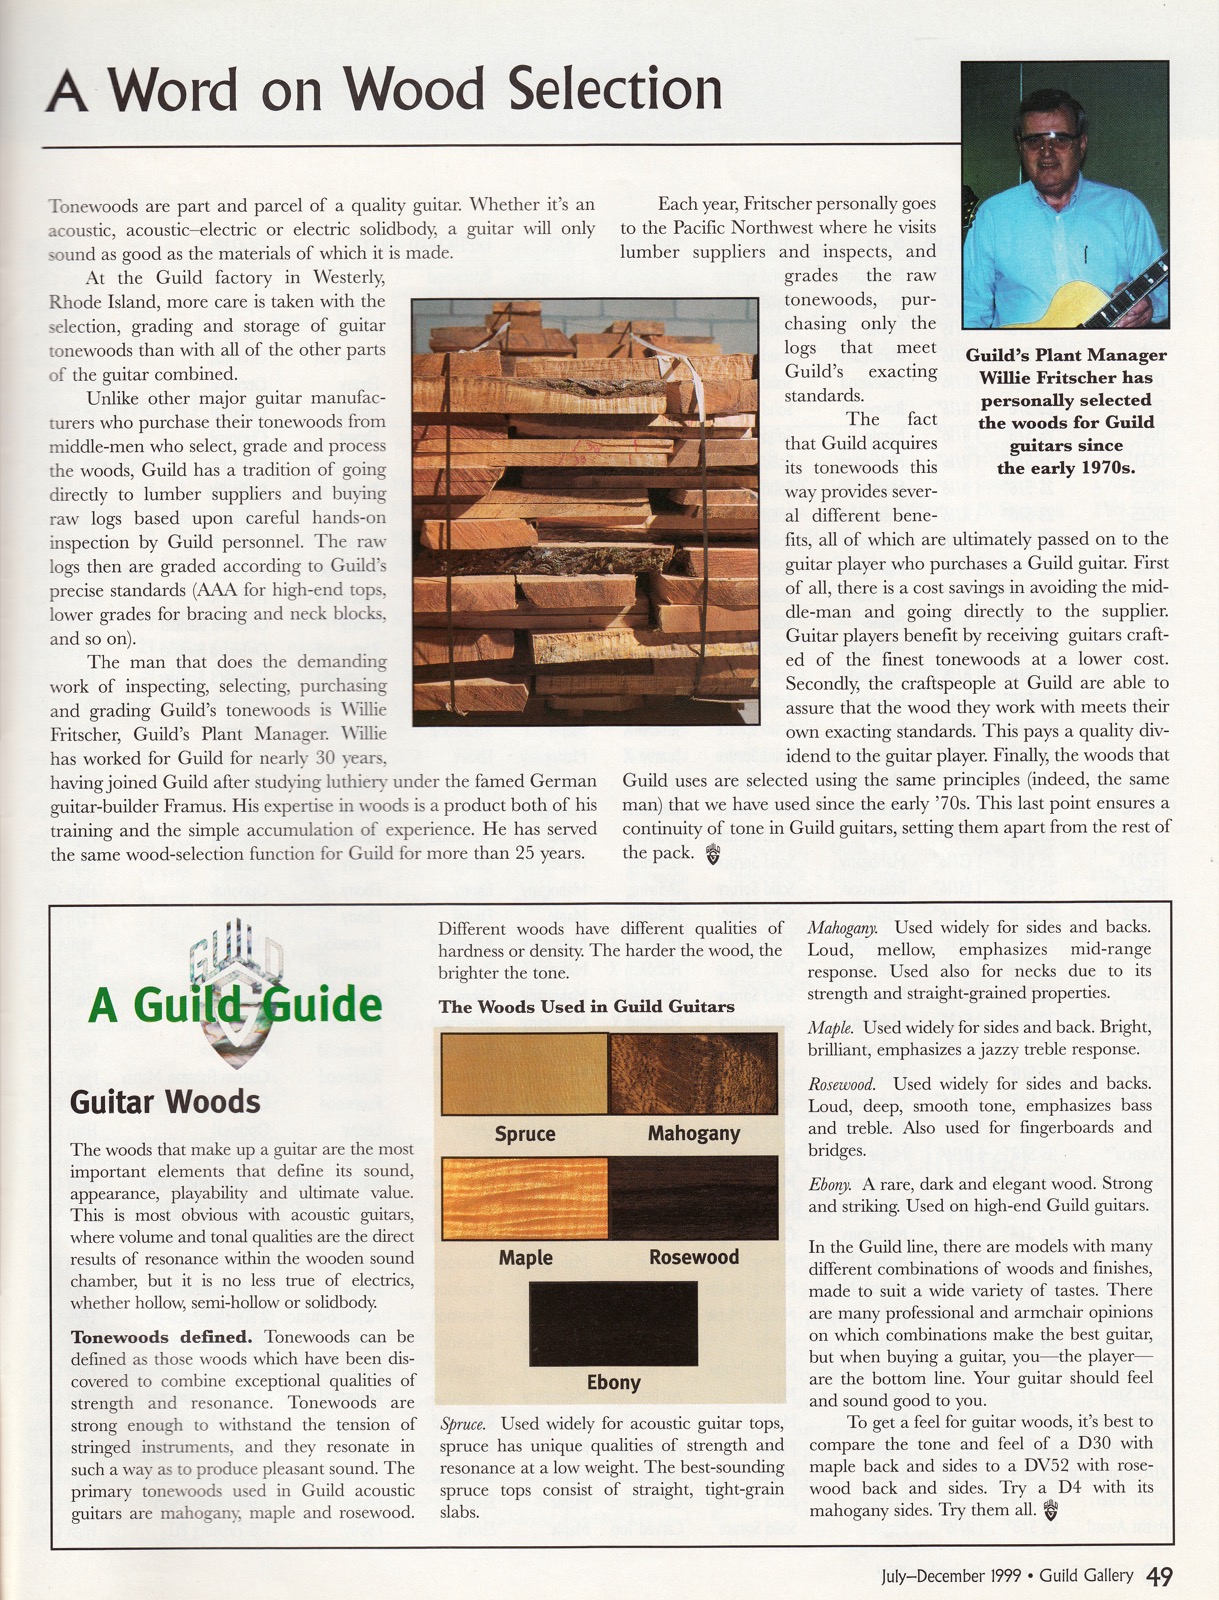 Guild-1999-Jul-Gallery-Catalog-pg48_1600.jpeg